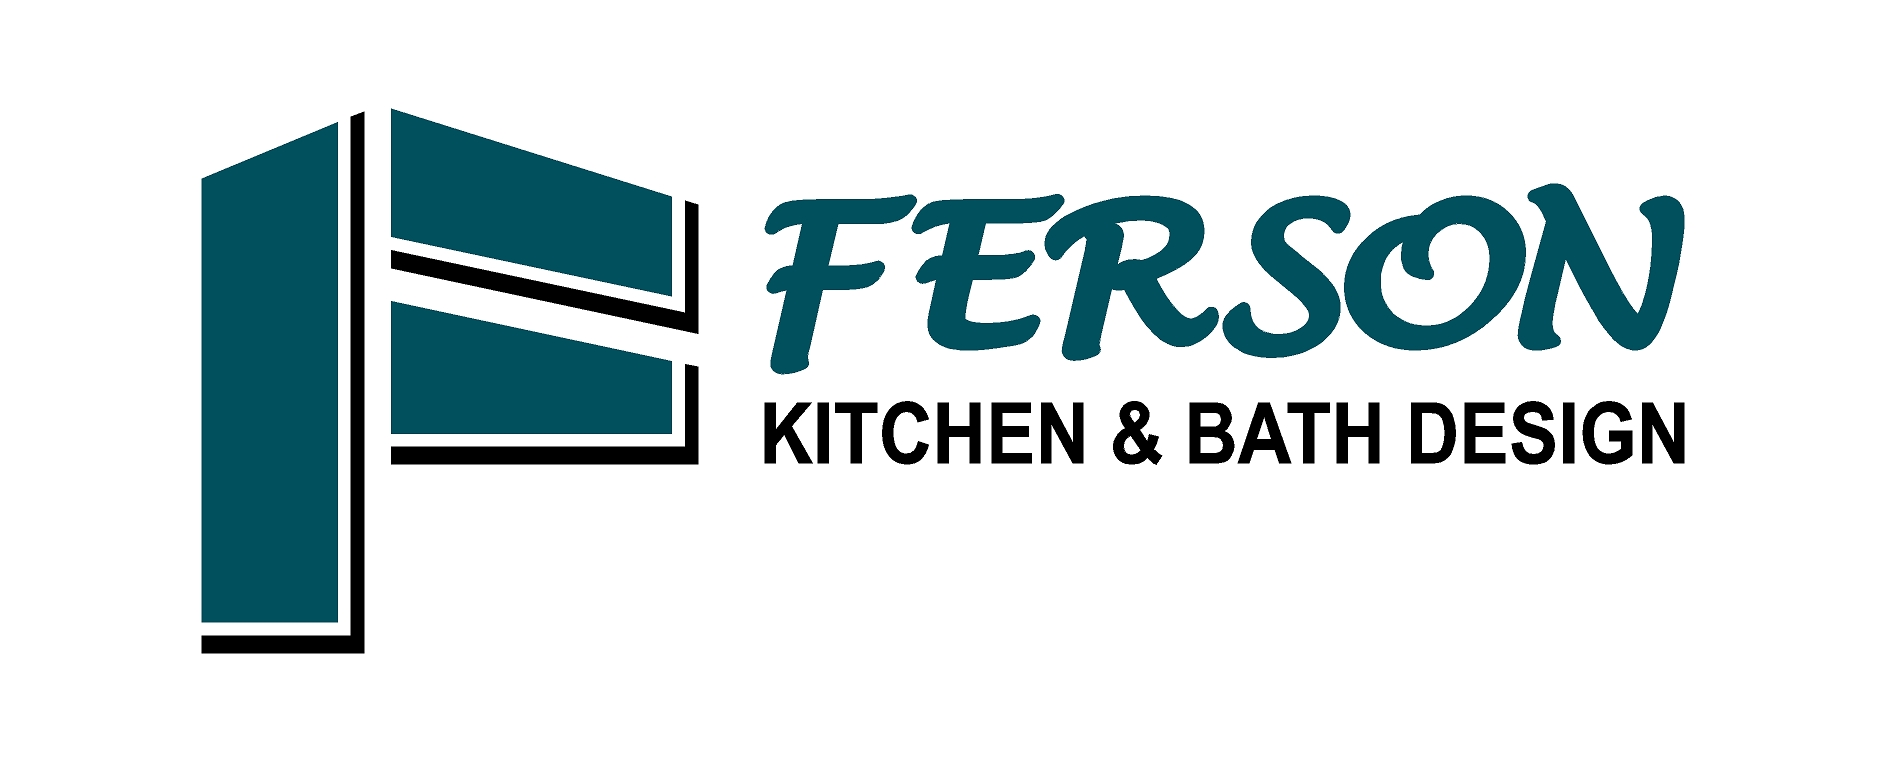 Ferson Kitchen & Bath